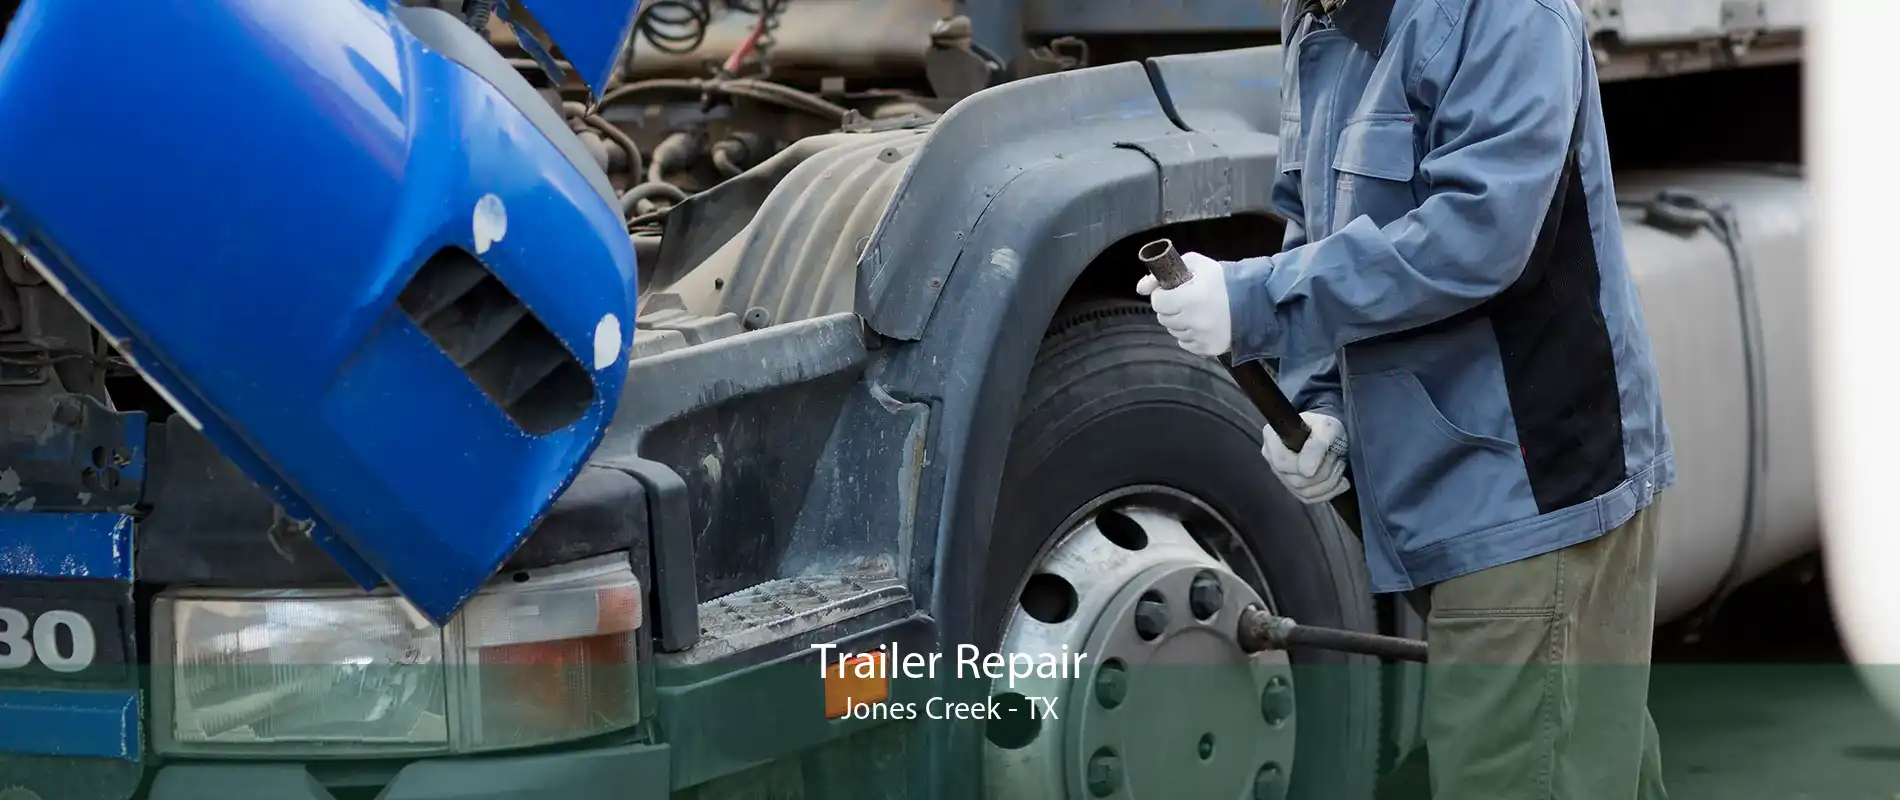 Trailer Repair Jones Creek - TX